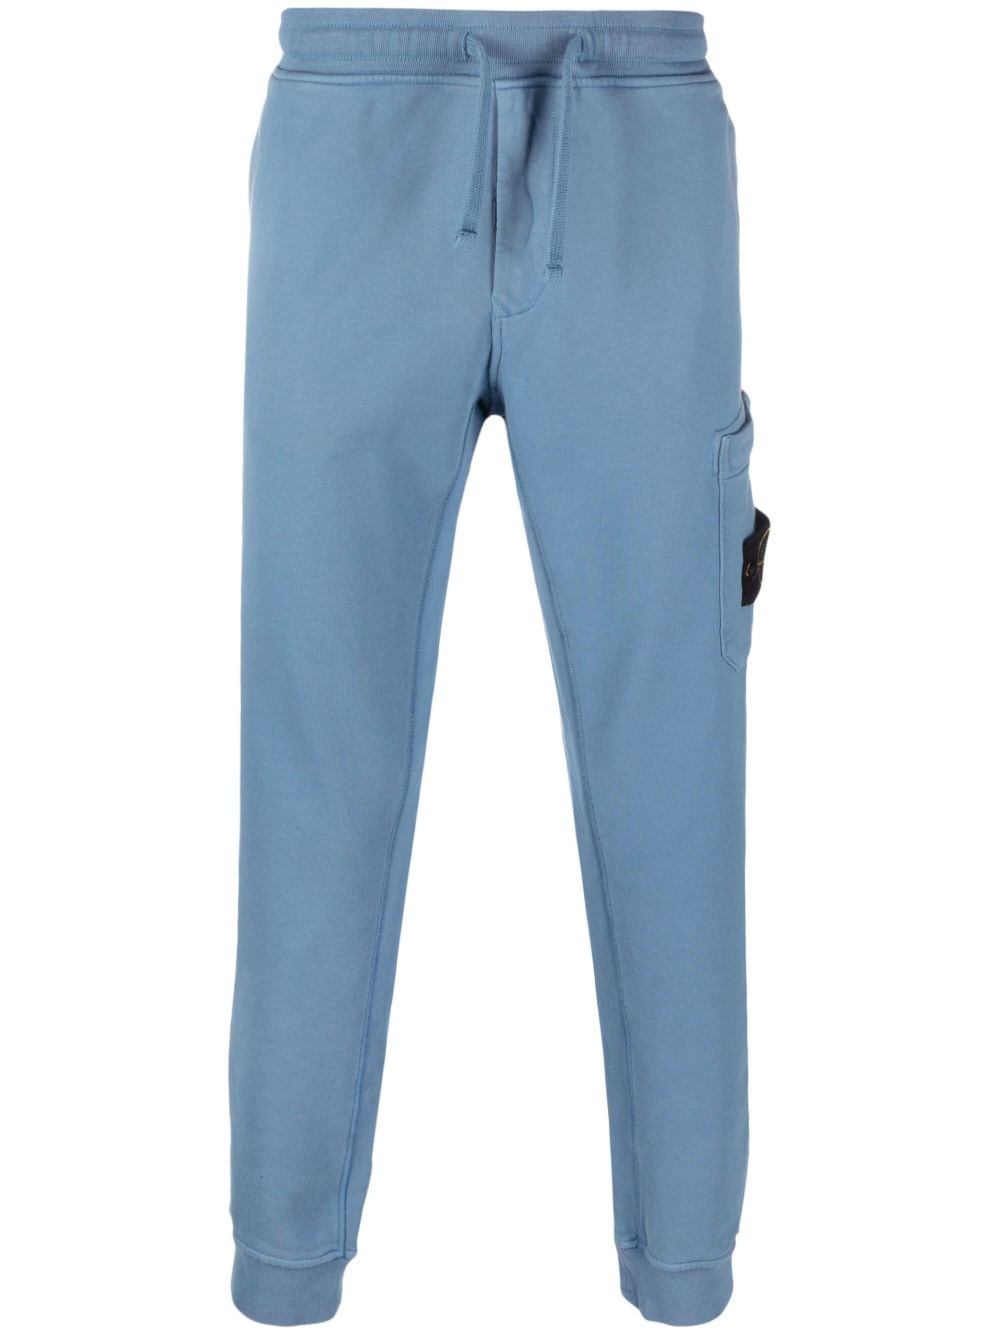 Stone Island Pantalon bleu de jogging 64551 COTTON FLEECE GARMENT DYED - Lothaire boutiques